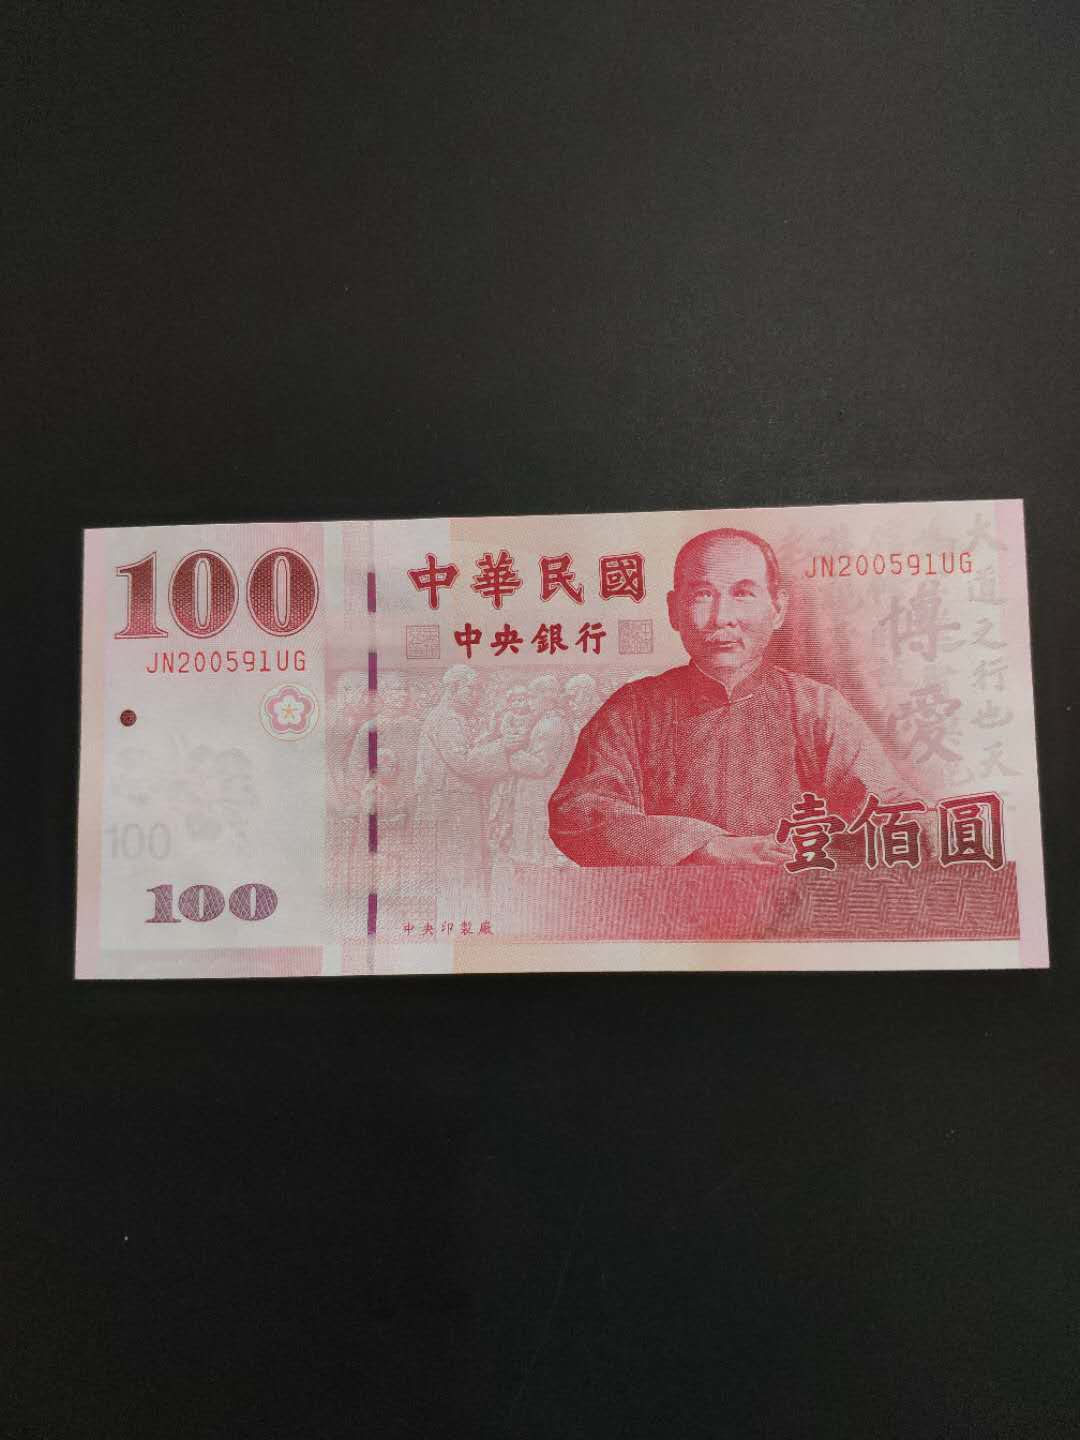 1948-1949年台湾银行本票台币壹万圆一枚、拾万圆二枚拍卖成交价格及图片- 芝麻开门收藏网